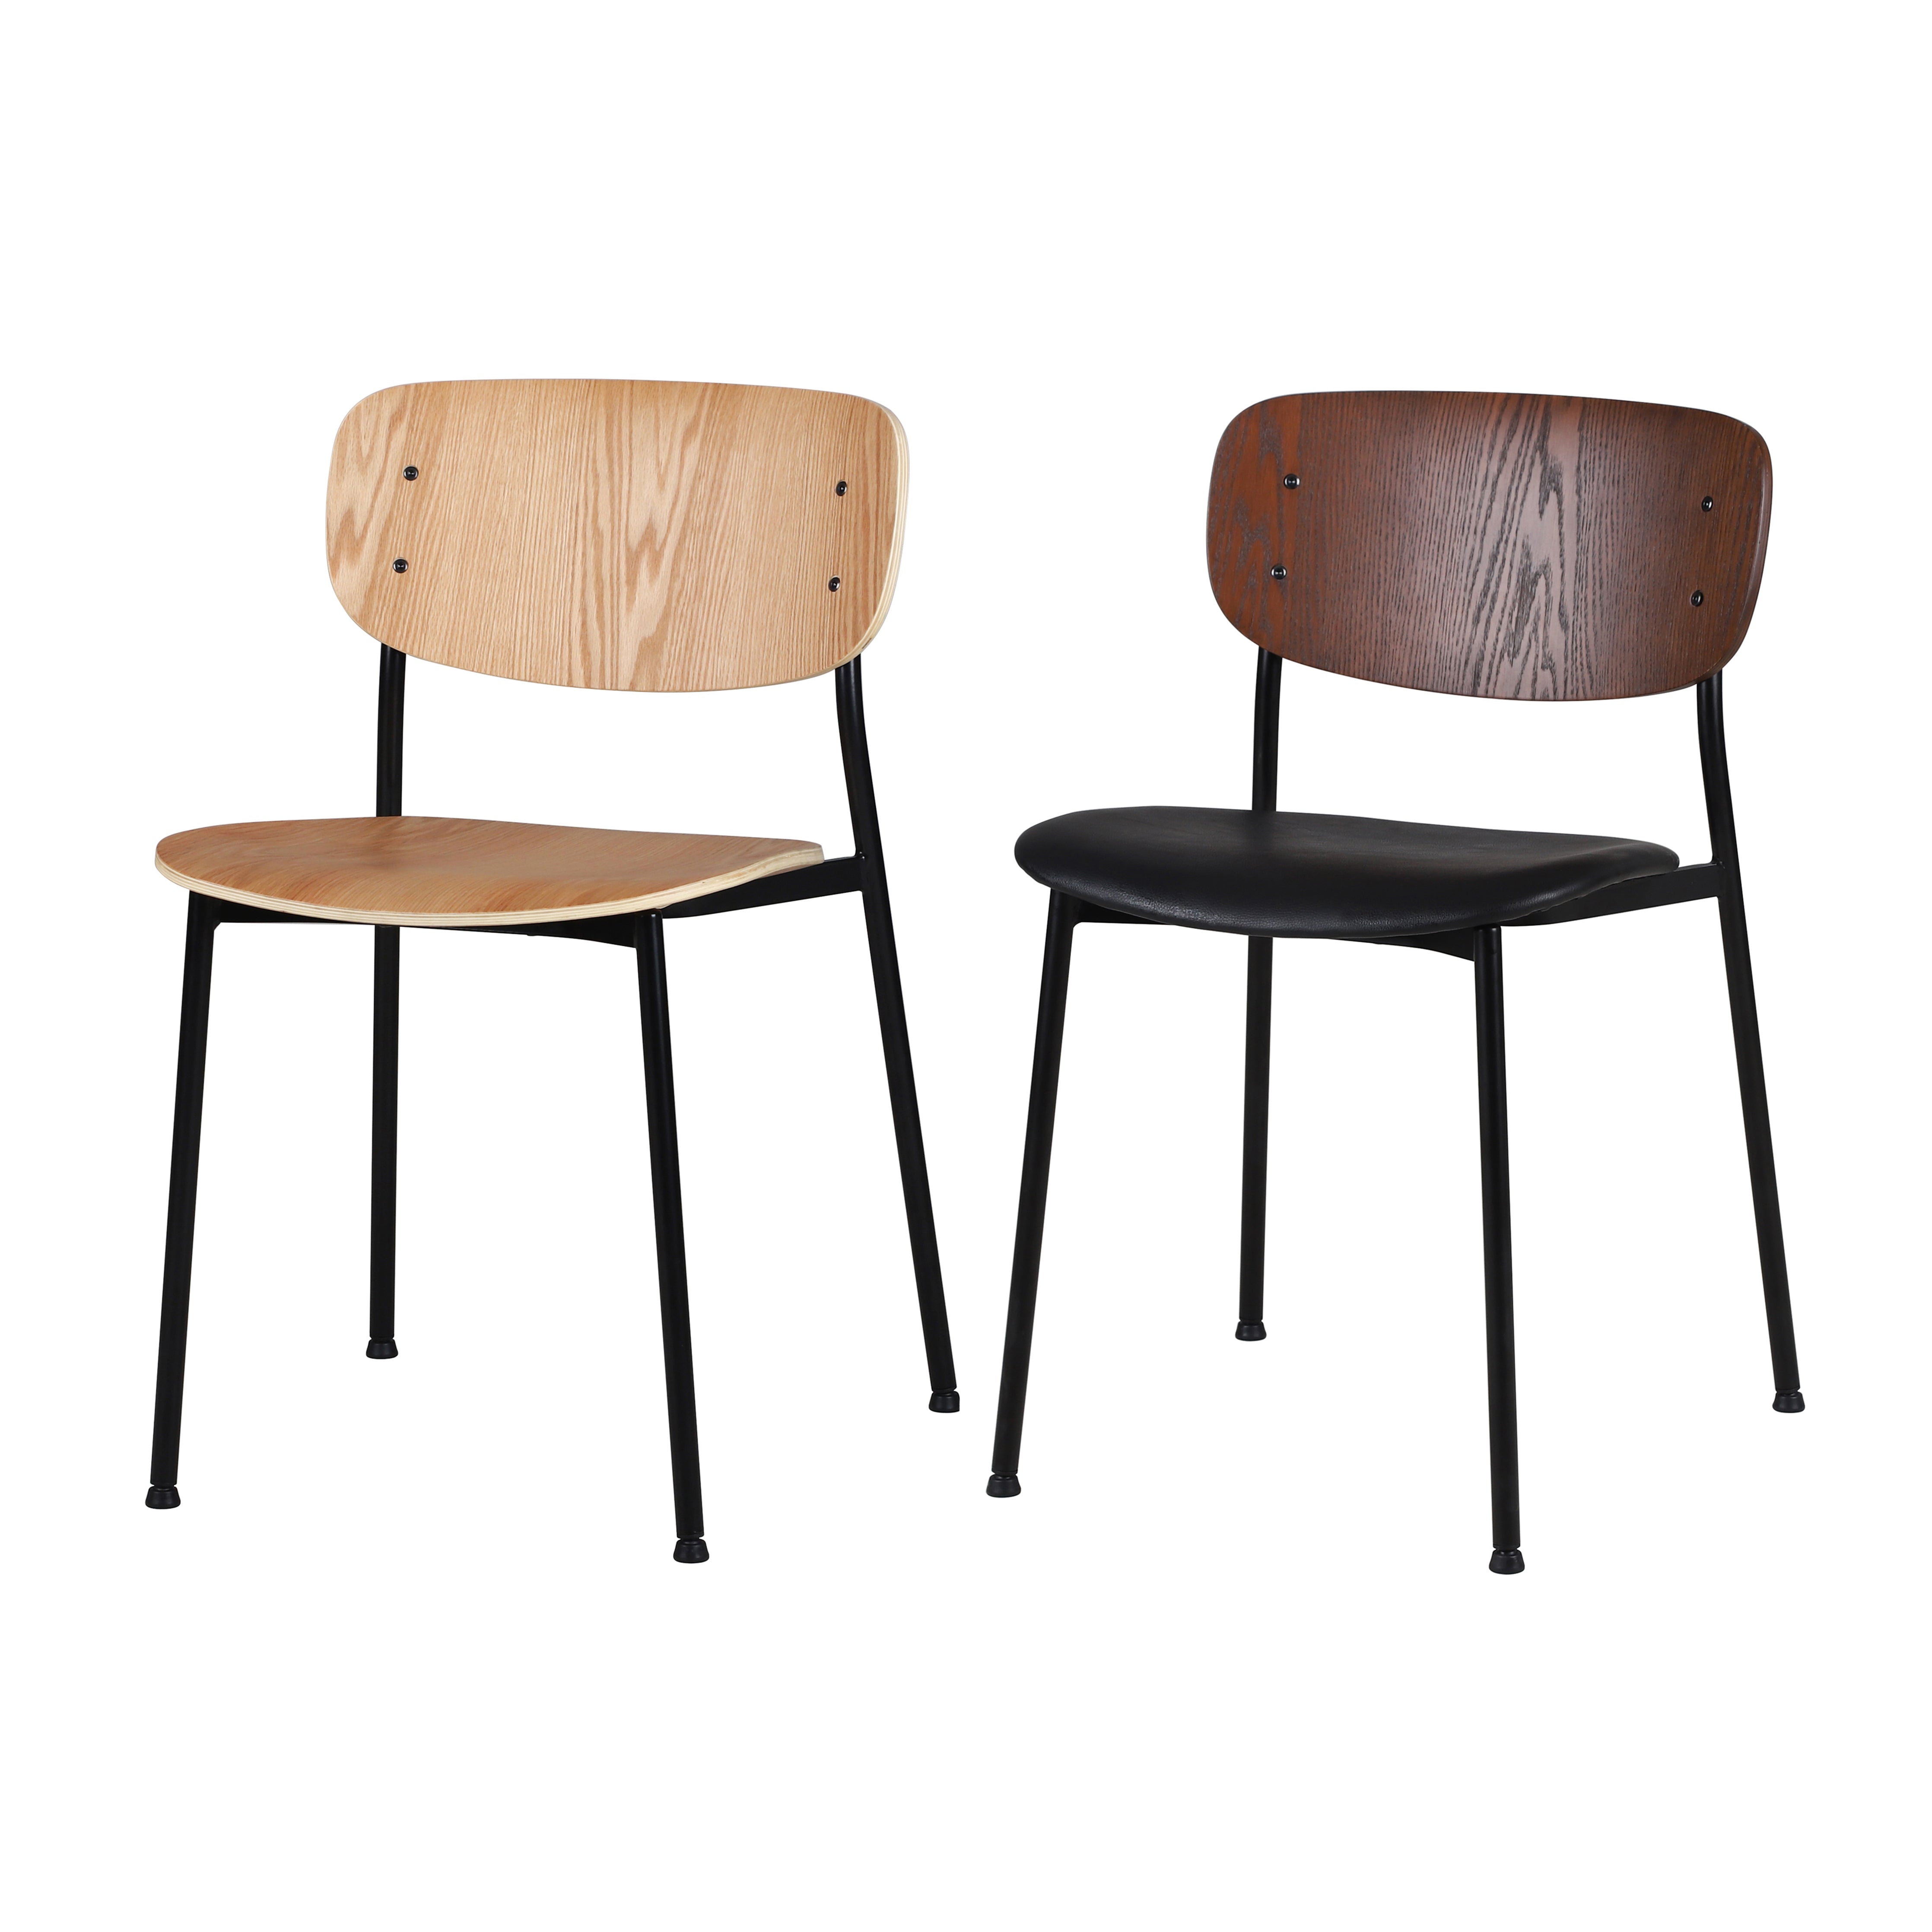 WM - Chair (Wooden)